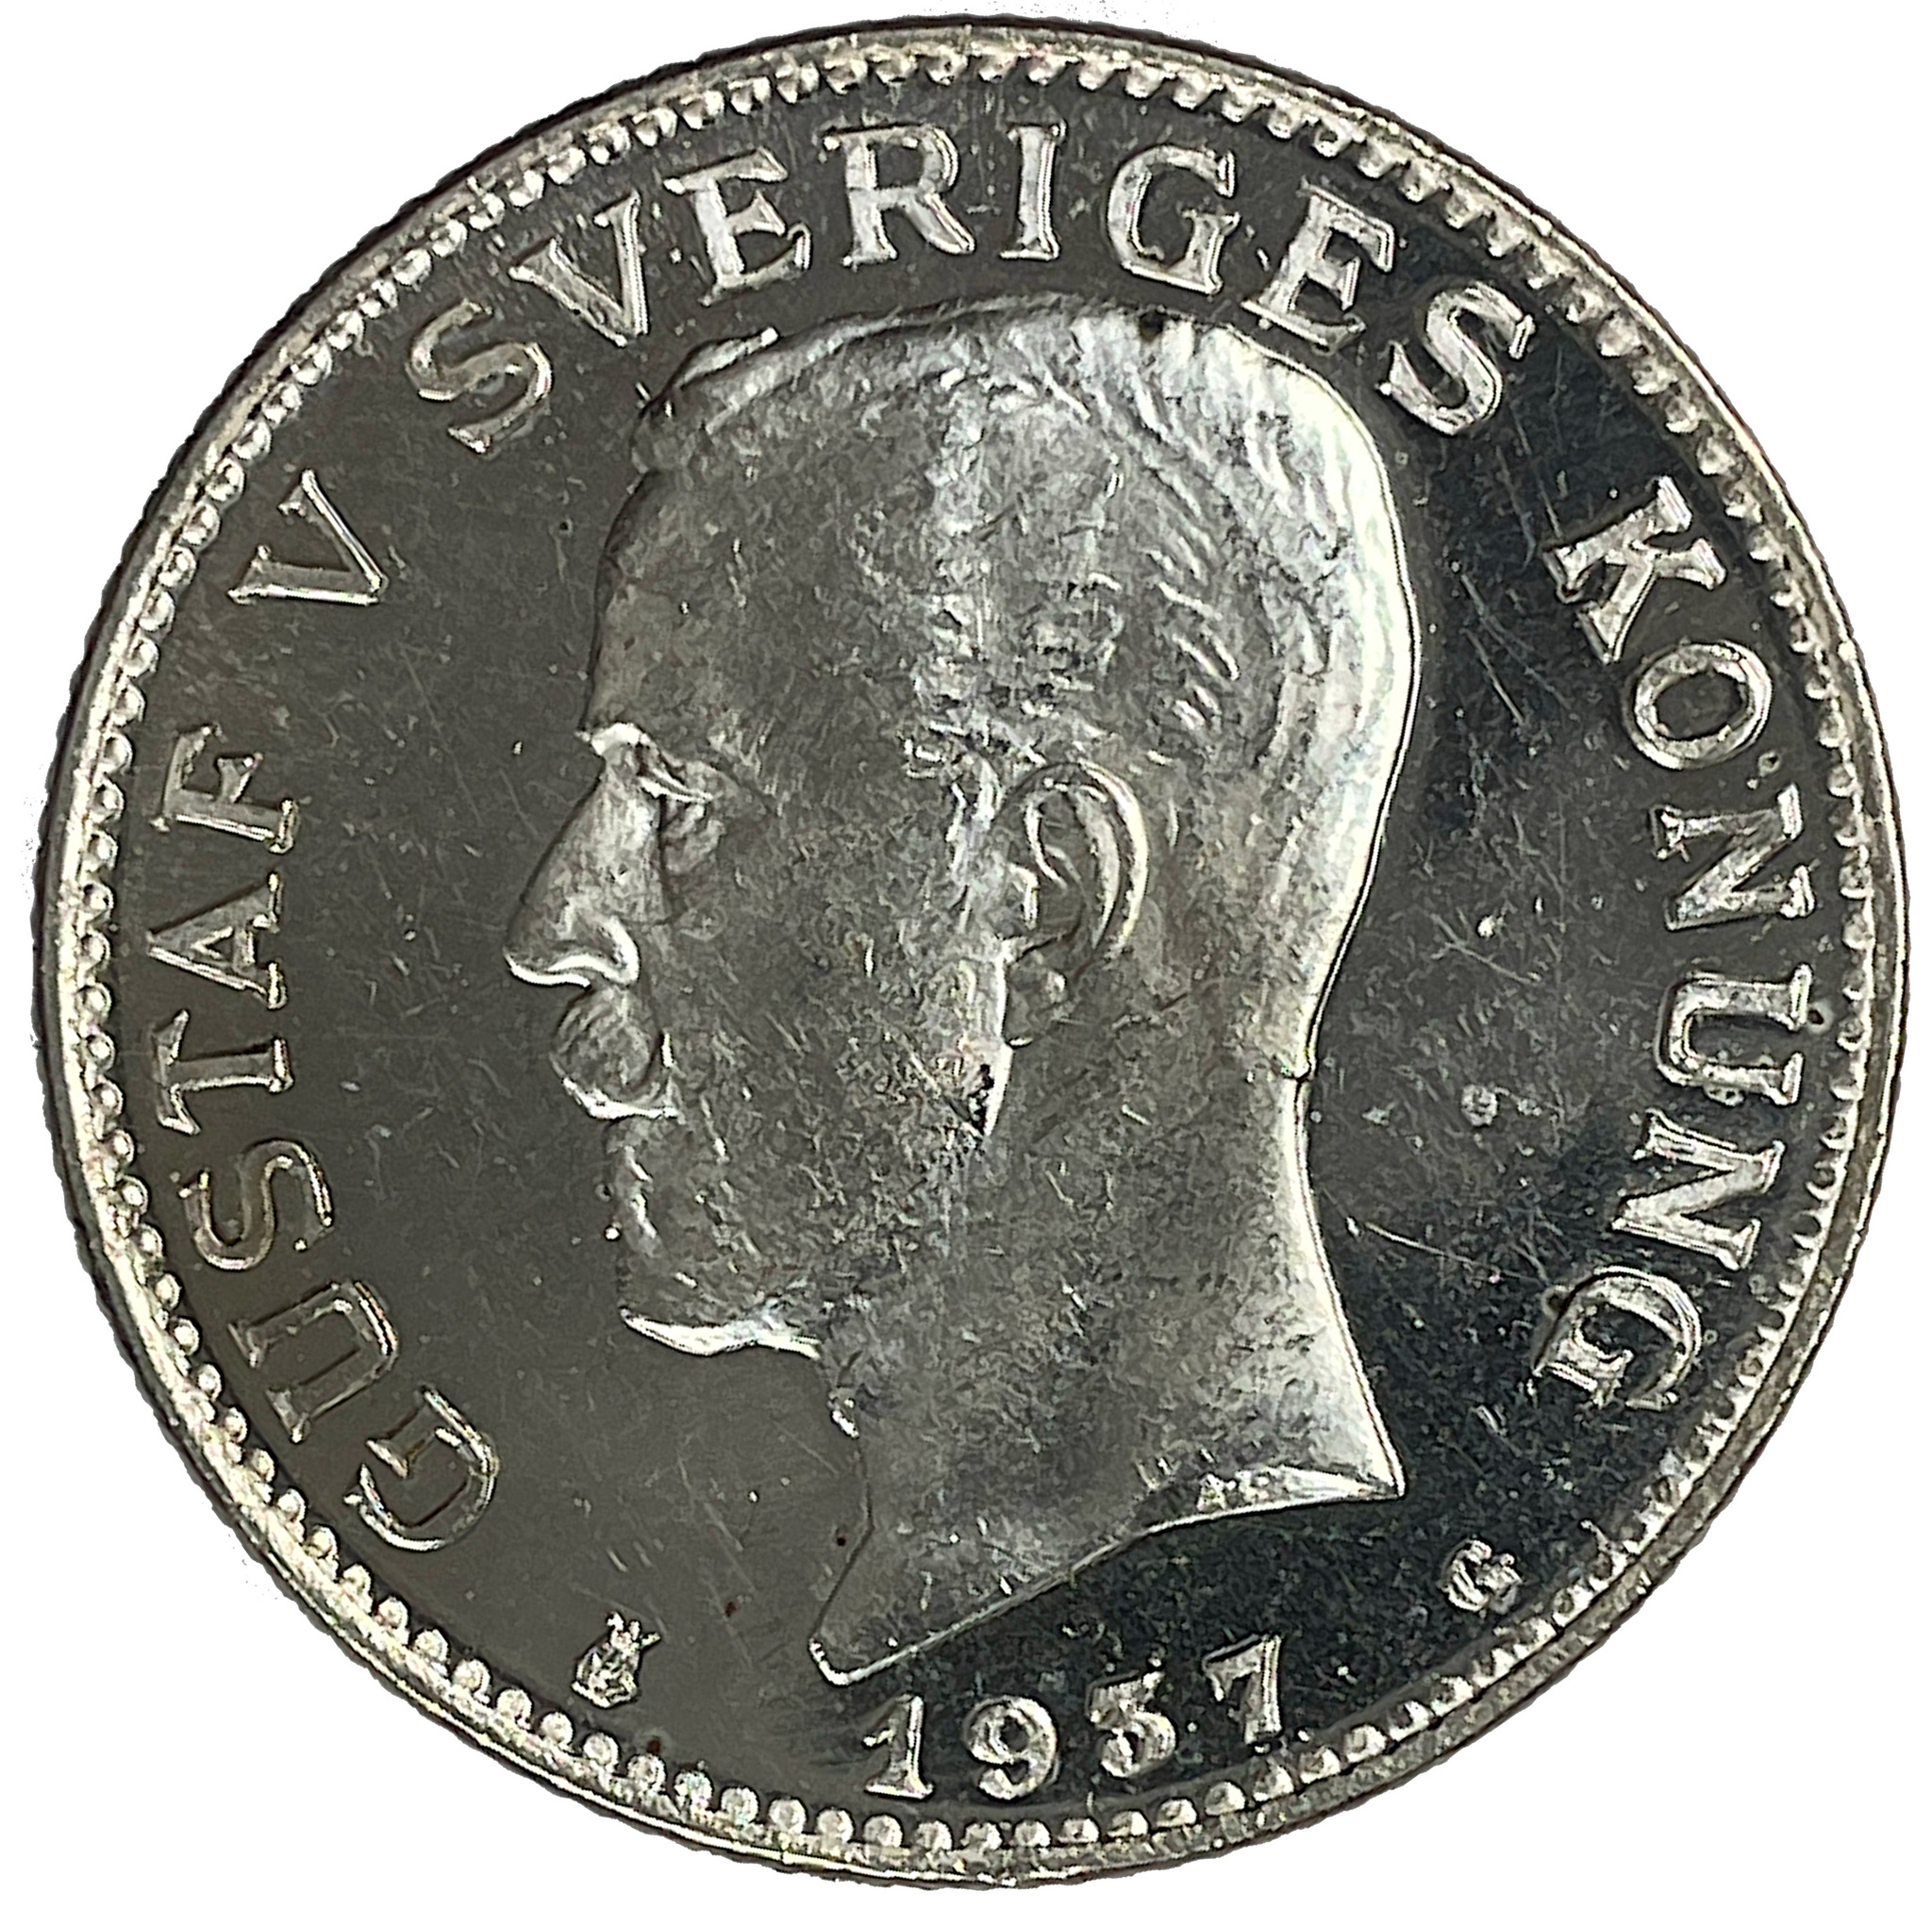 Gustav V, 1 Krona 1937 - Djup spegelkaraktär